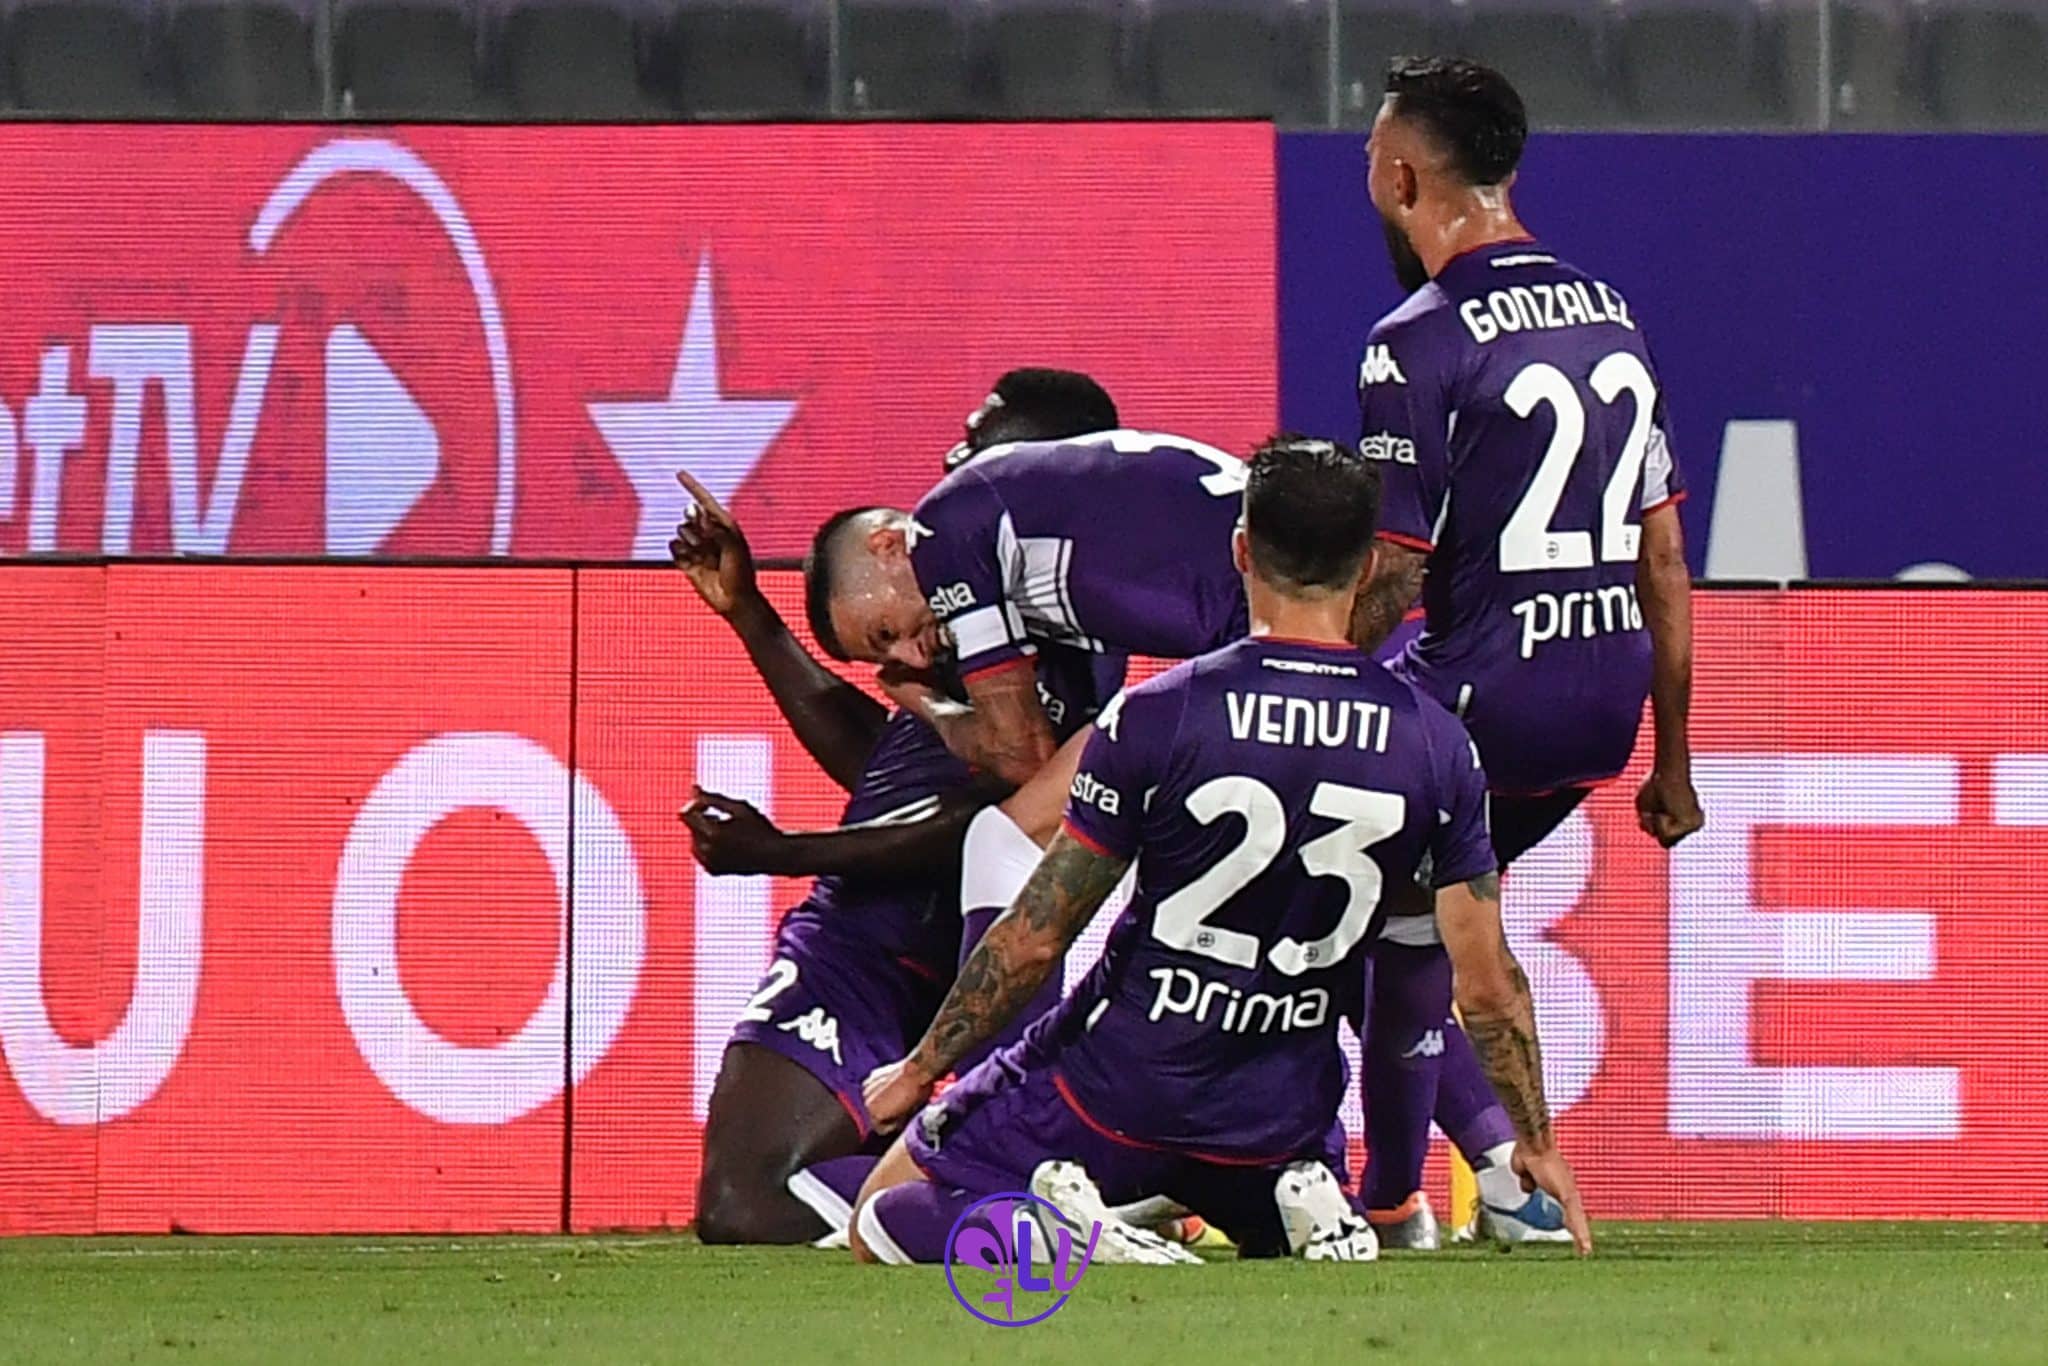 Nazione, Fiorentina in Europa con il brivido, conquistata all’ultimo tuffo. Juve senza stimoli